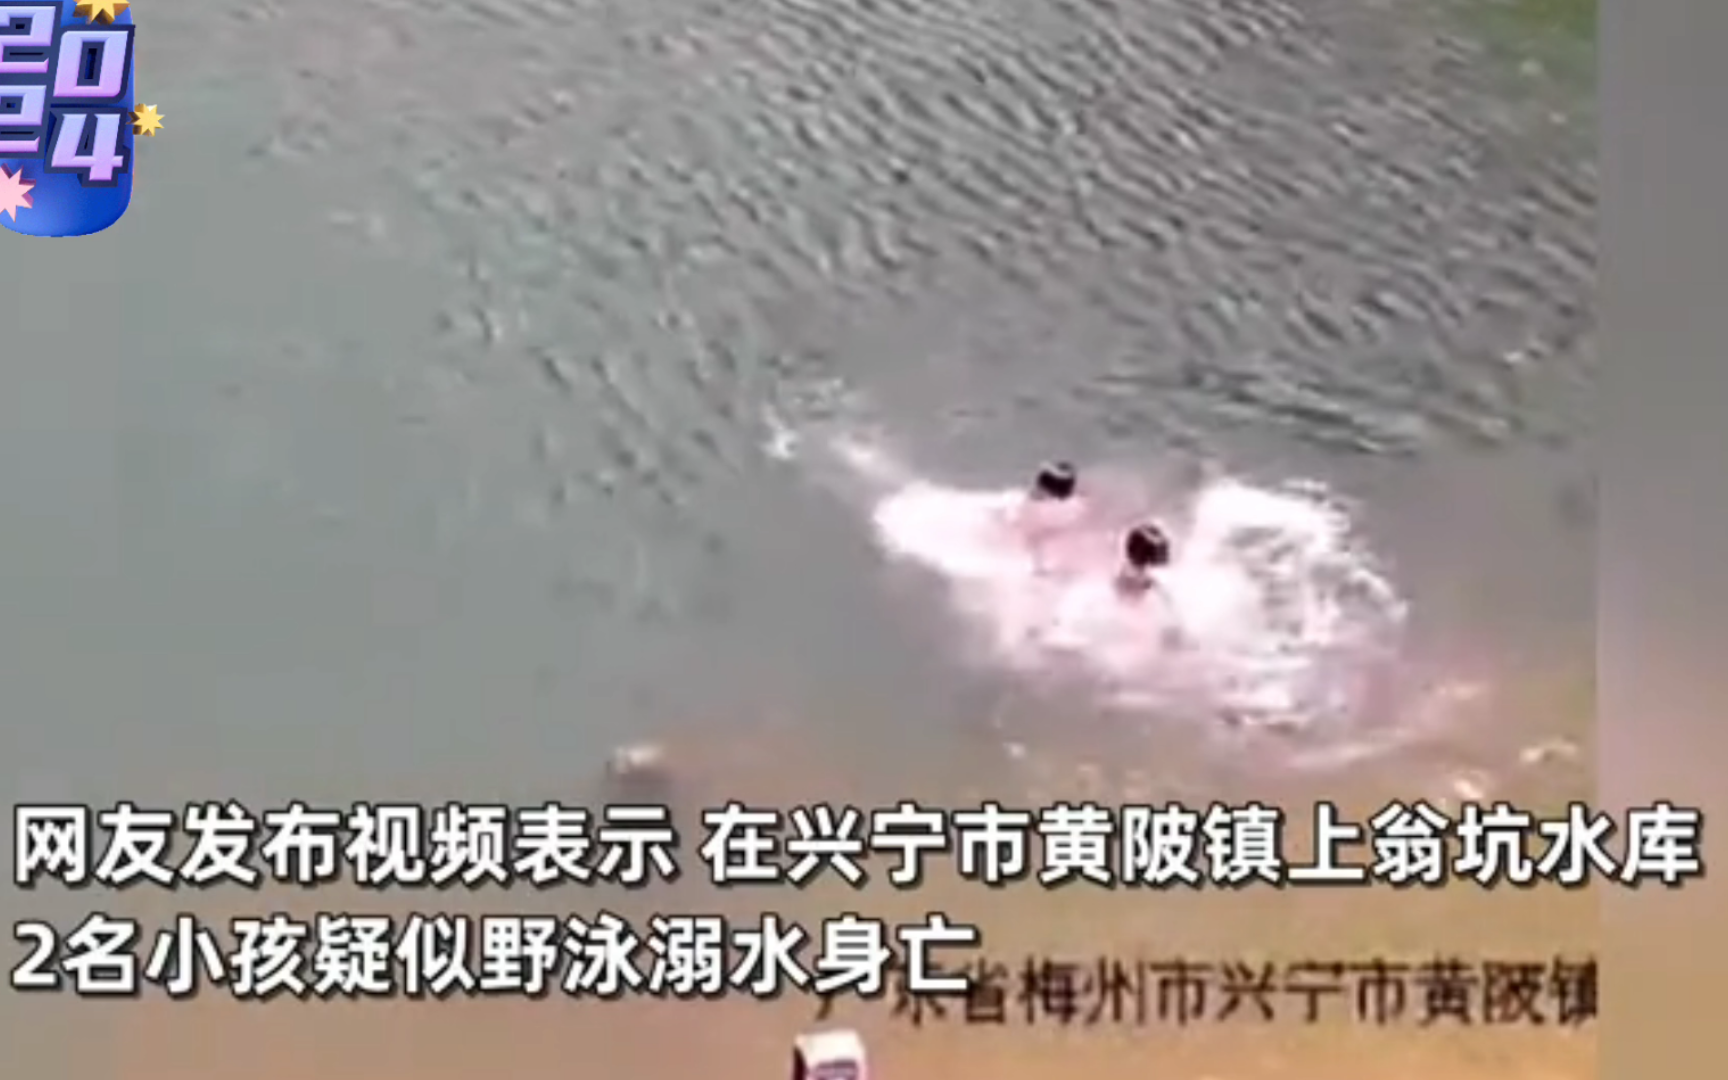 广东2名小孩溺水身亡,监控记录全程,镇政府回应